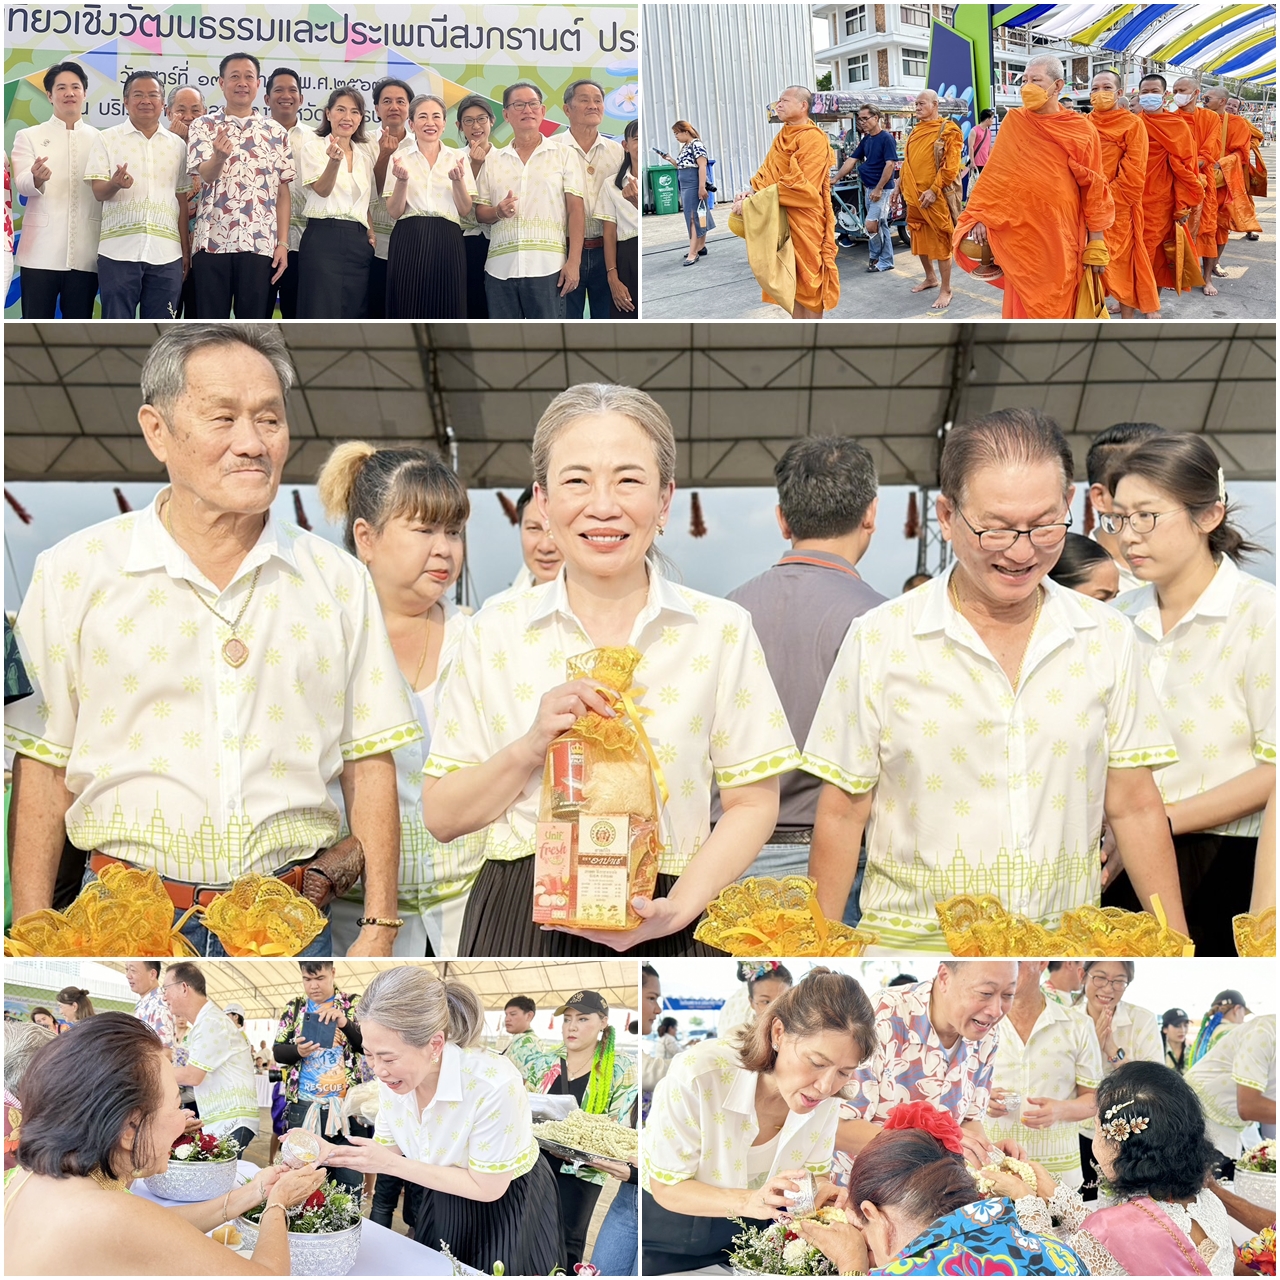 "กิจกรรมเทศกาลวันสงกรานต์ประจำปี 2567 ช่วงเช้าพิธีทำบุญตักบาตรพระภิกษุสงฆ์ รดน้ำขอพรผู้ใหญ่ และประกวดผู้สูงอายุอนุรักษ์แต่งกายไทย "